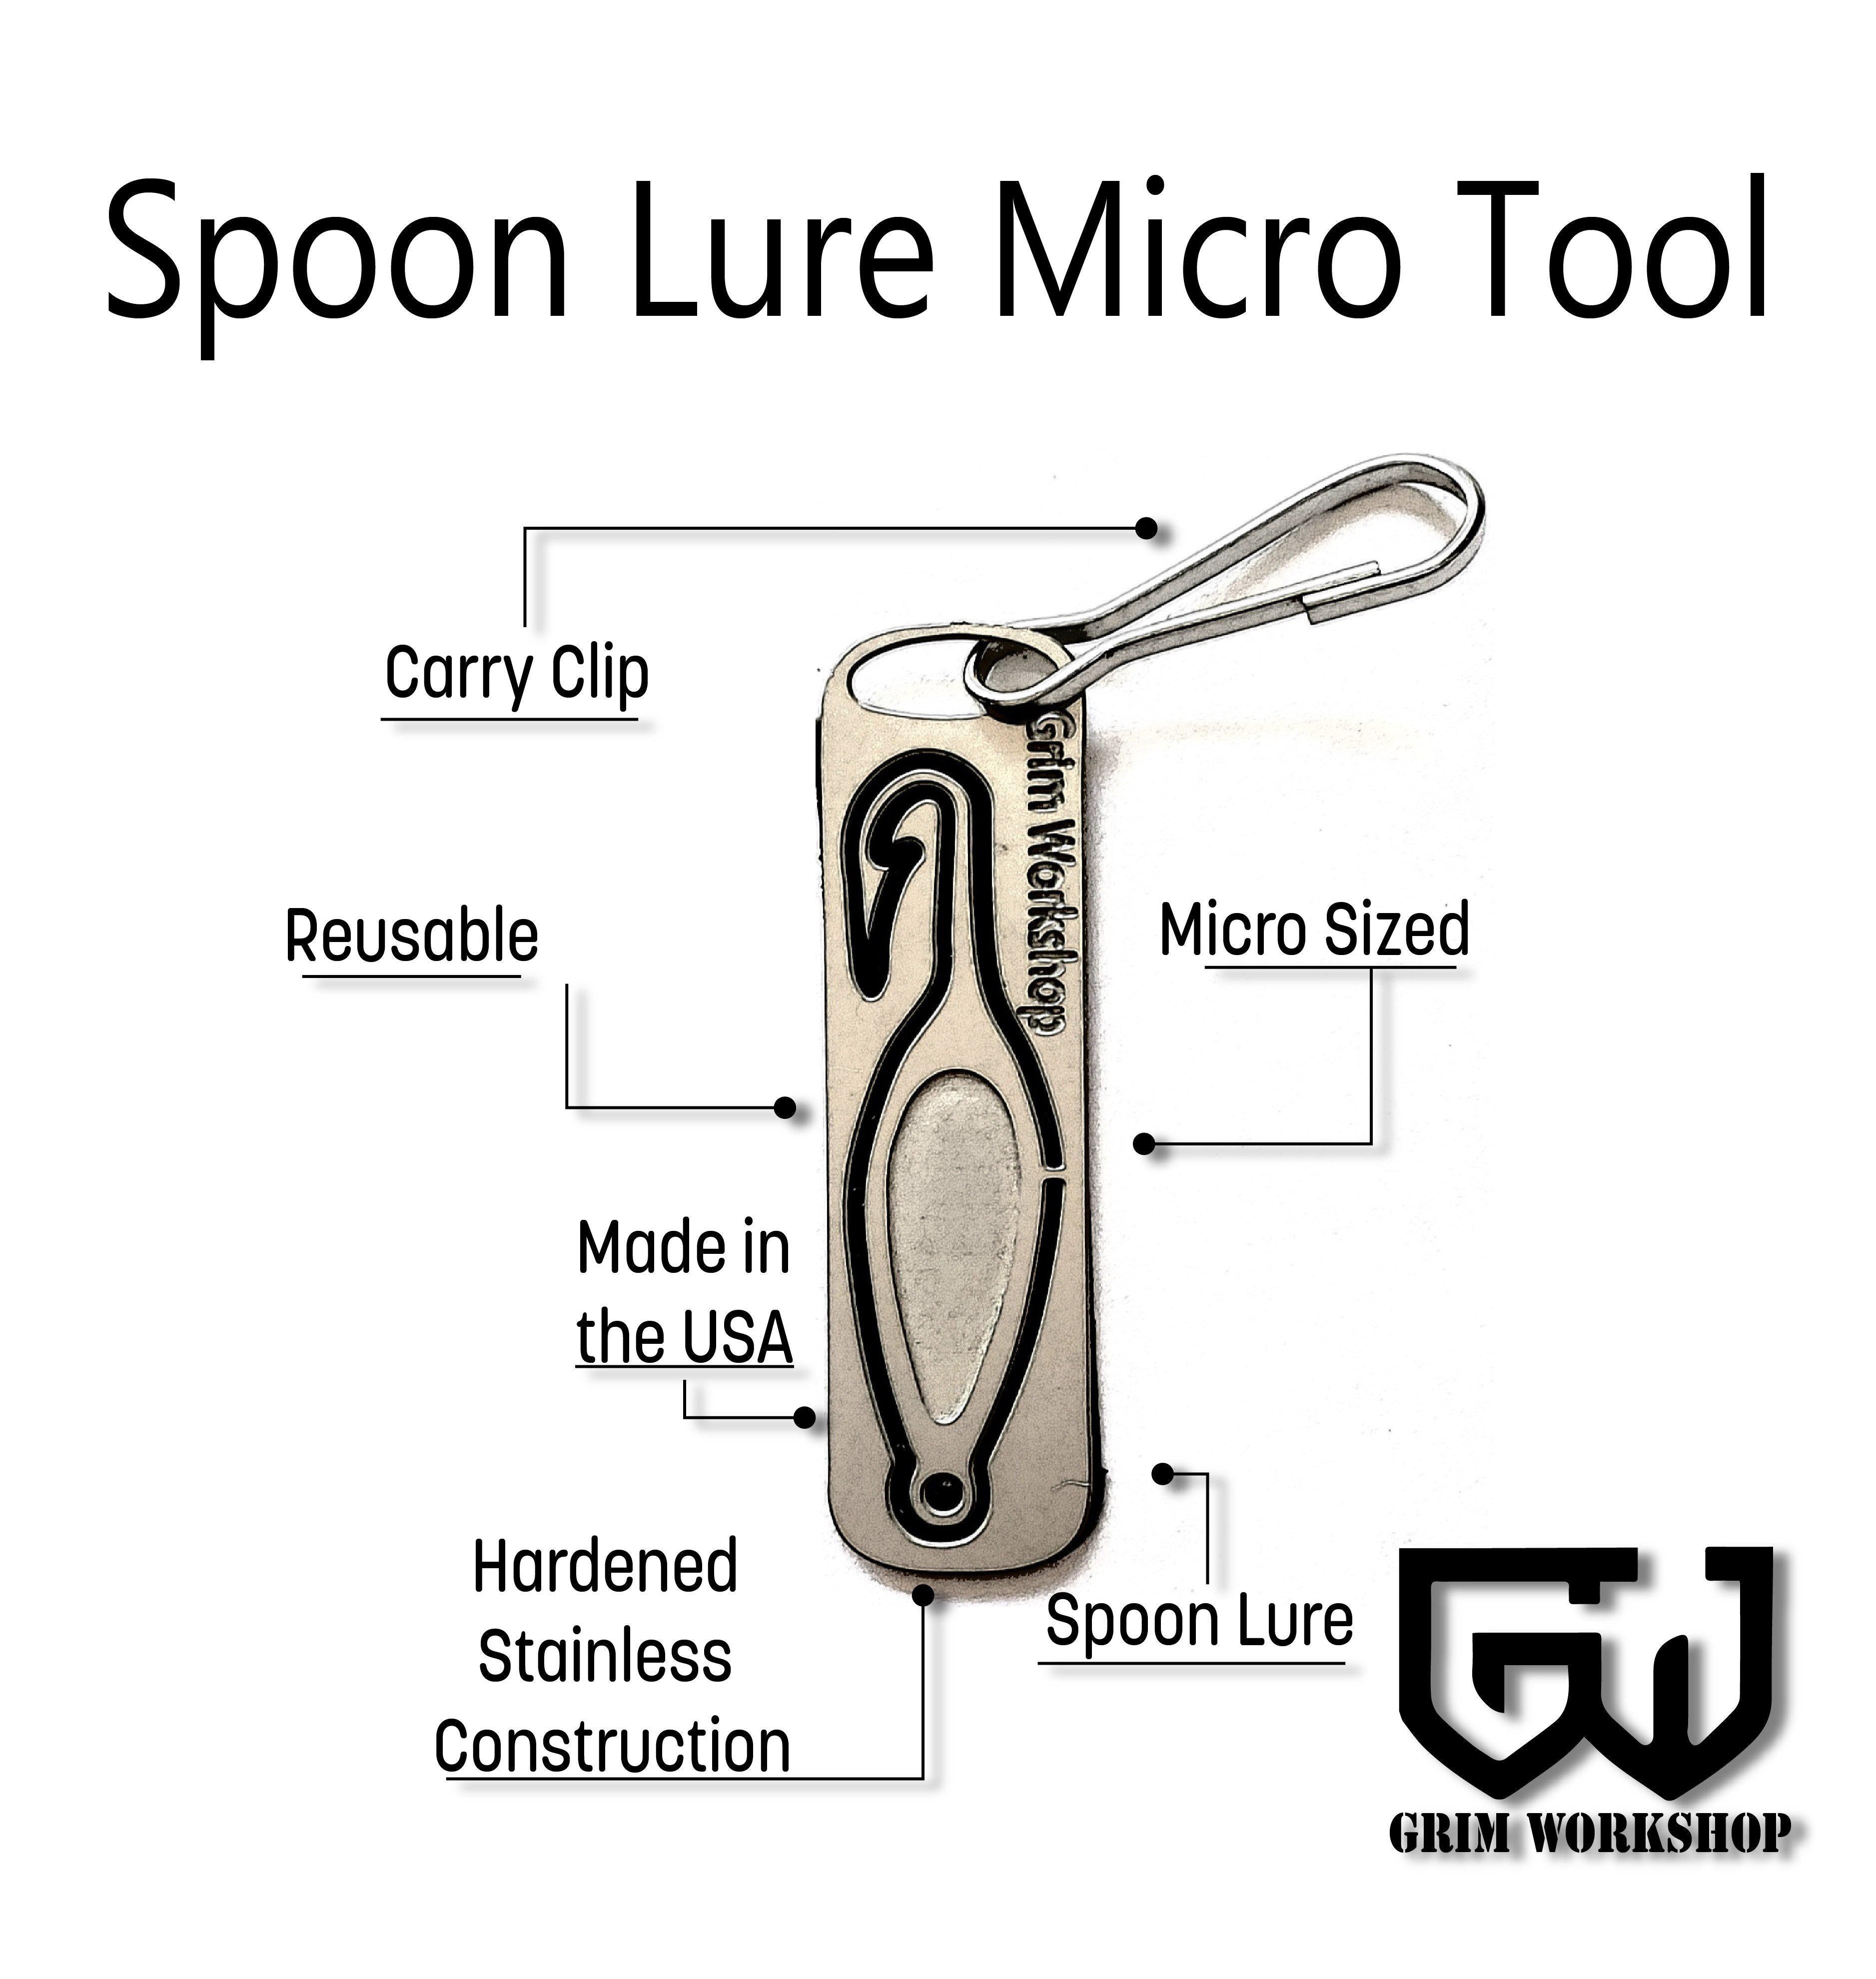 Spoon Lure Micro Tool | Grim Workshop